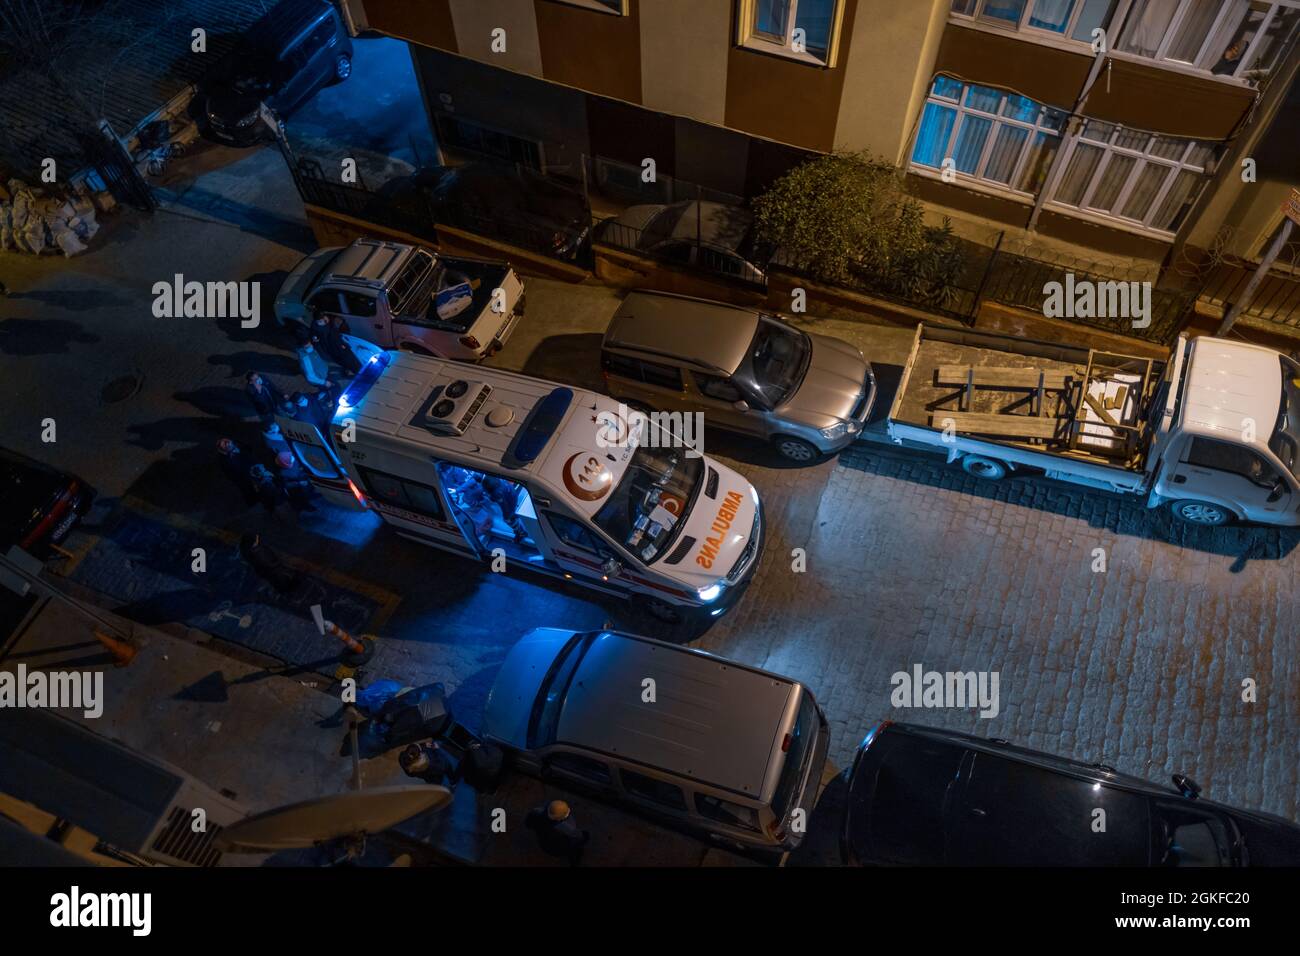 Taksim, Istanbul, Turchia - 03.14.2021: Un’ambulanza turca che porta un paziente mentre è in servizio per le strade secondarie vicino all’ospedale di Taksim, situato intorno allo stretto Foto Stock